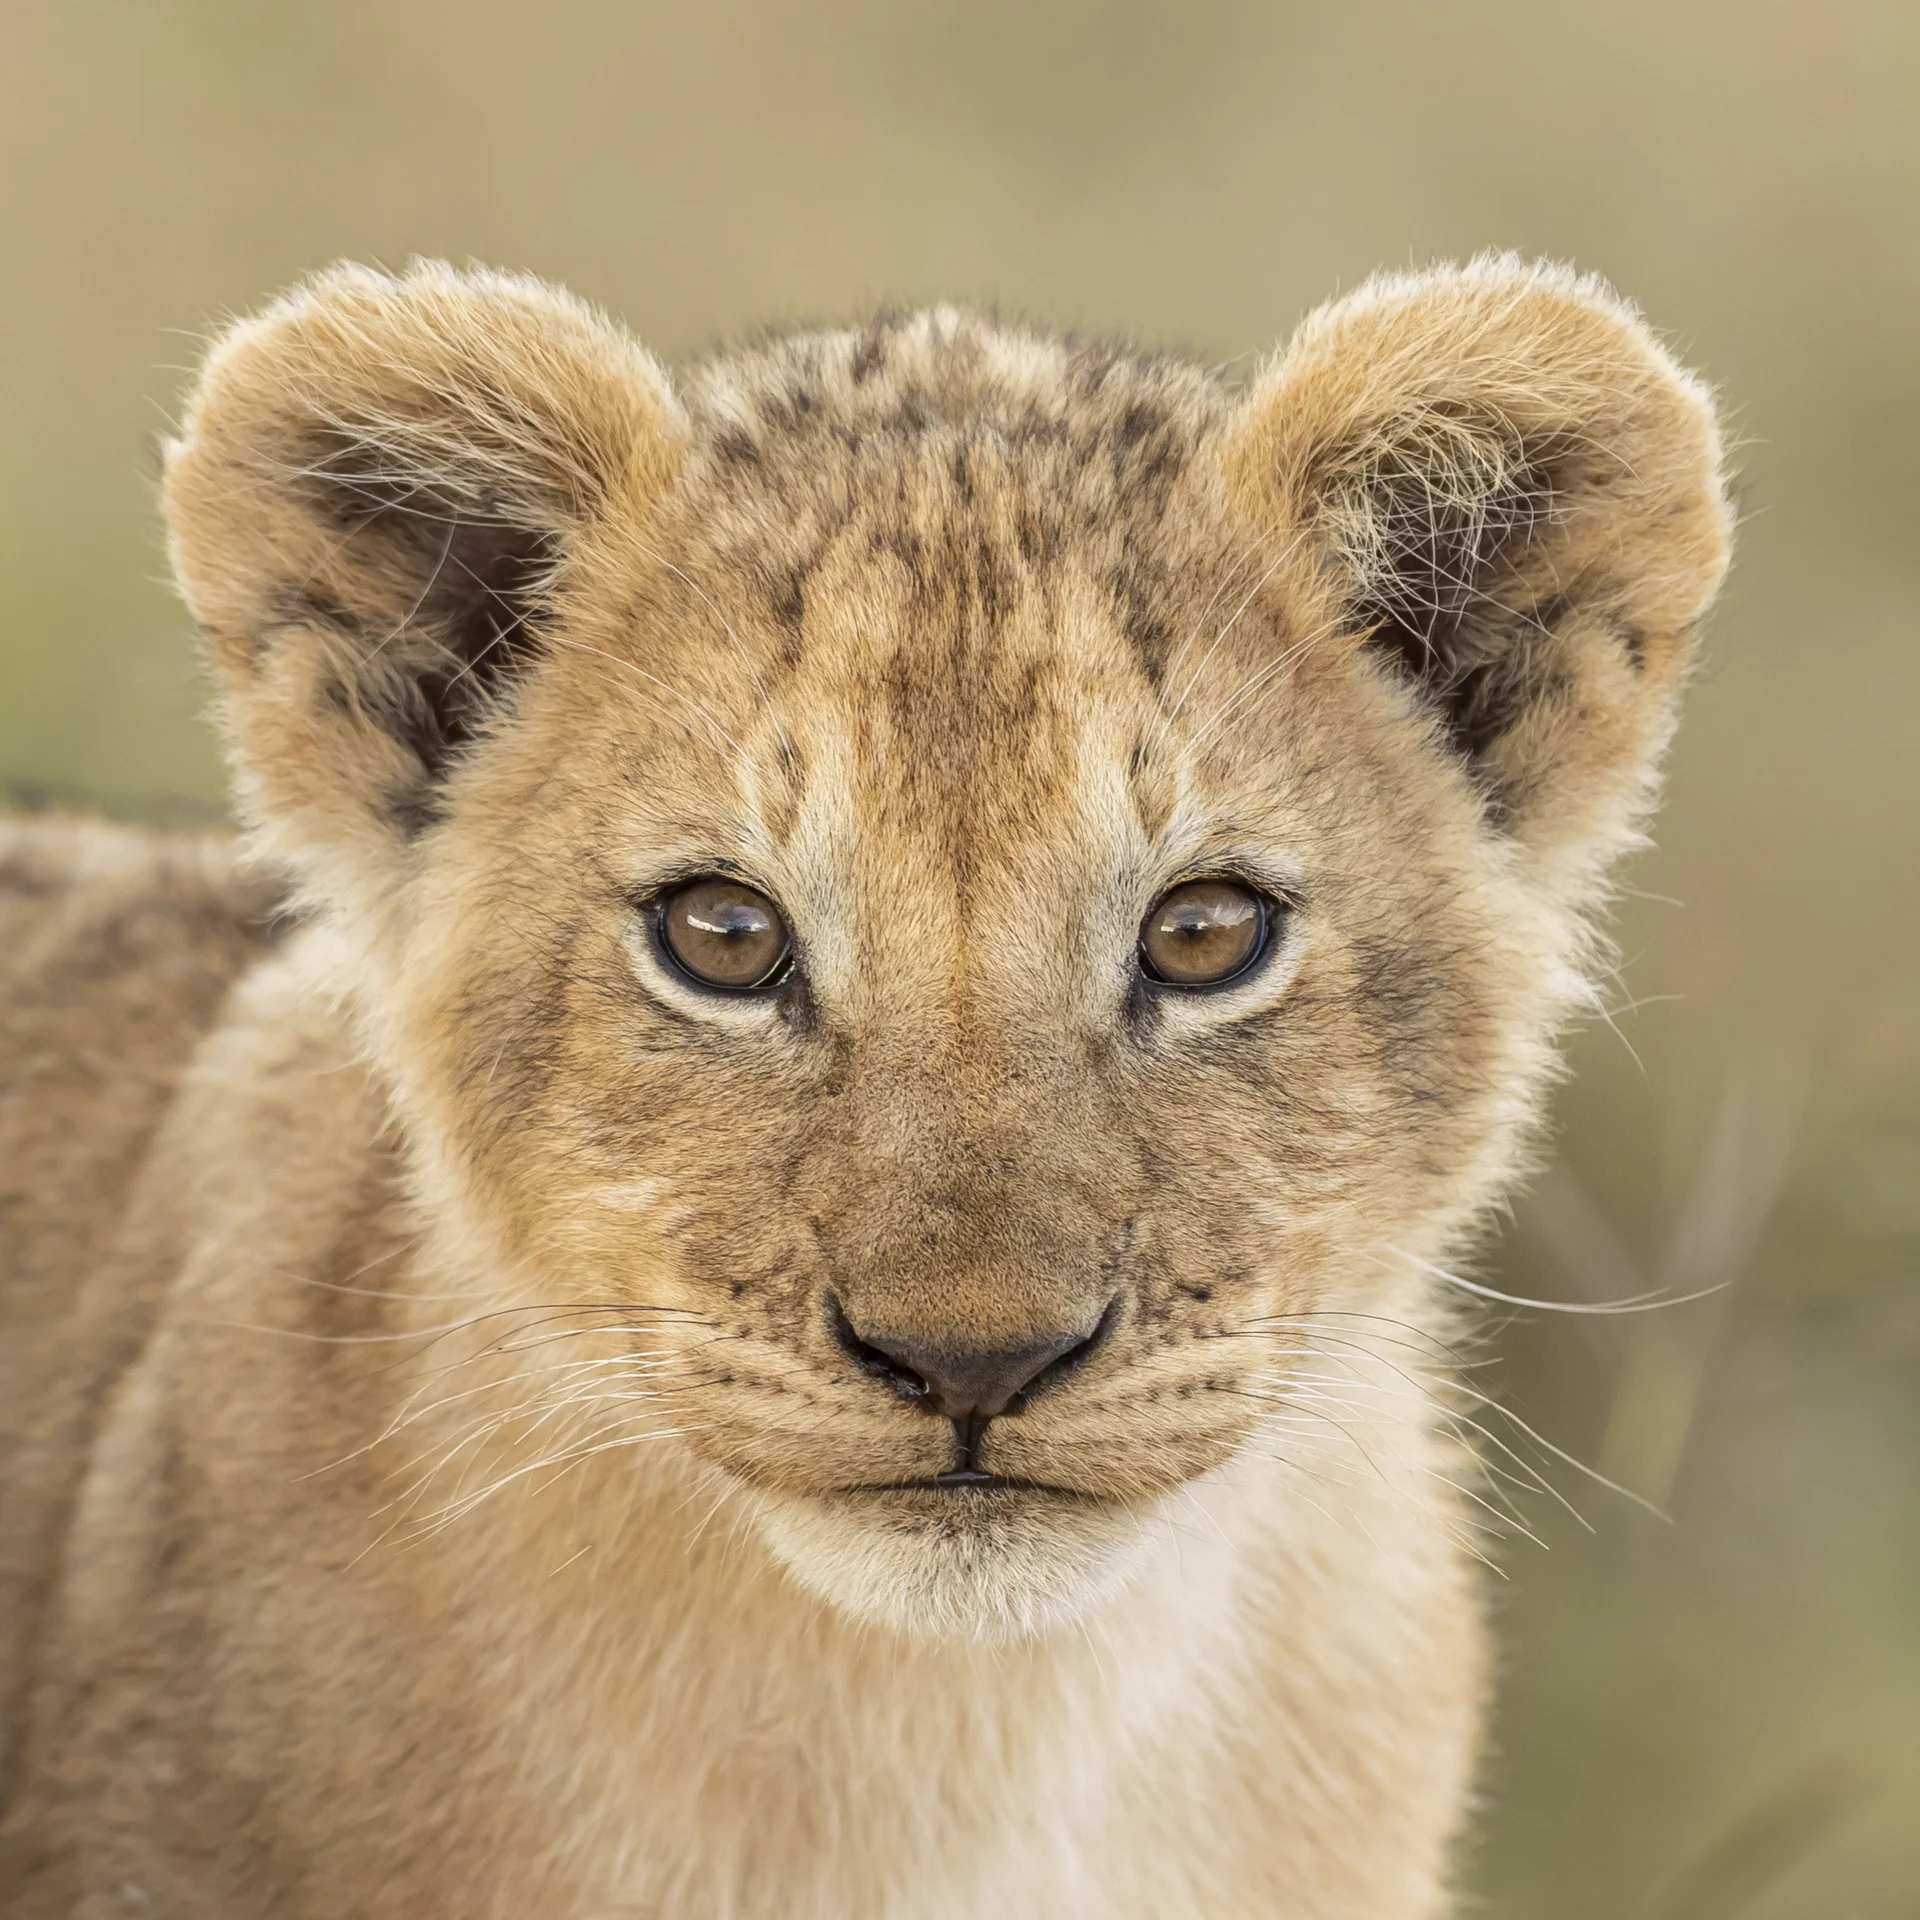 Portrait d'un jeune lion, Kenya - Portrait of a young lion, Kenya / Panthera leo